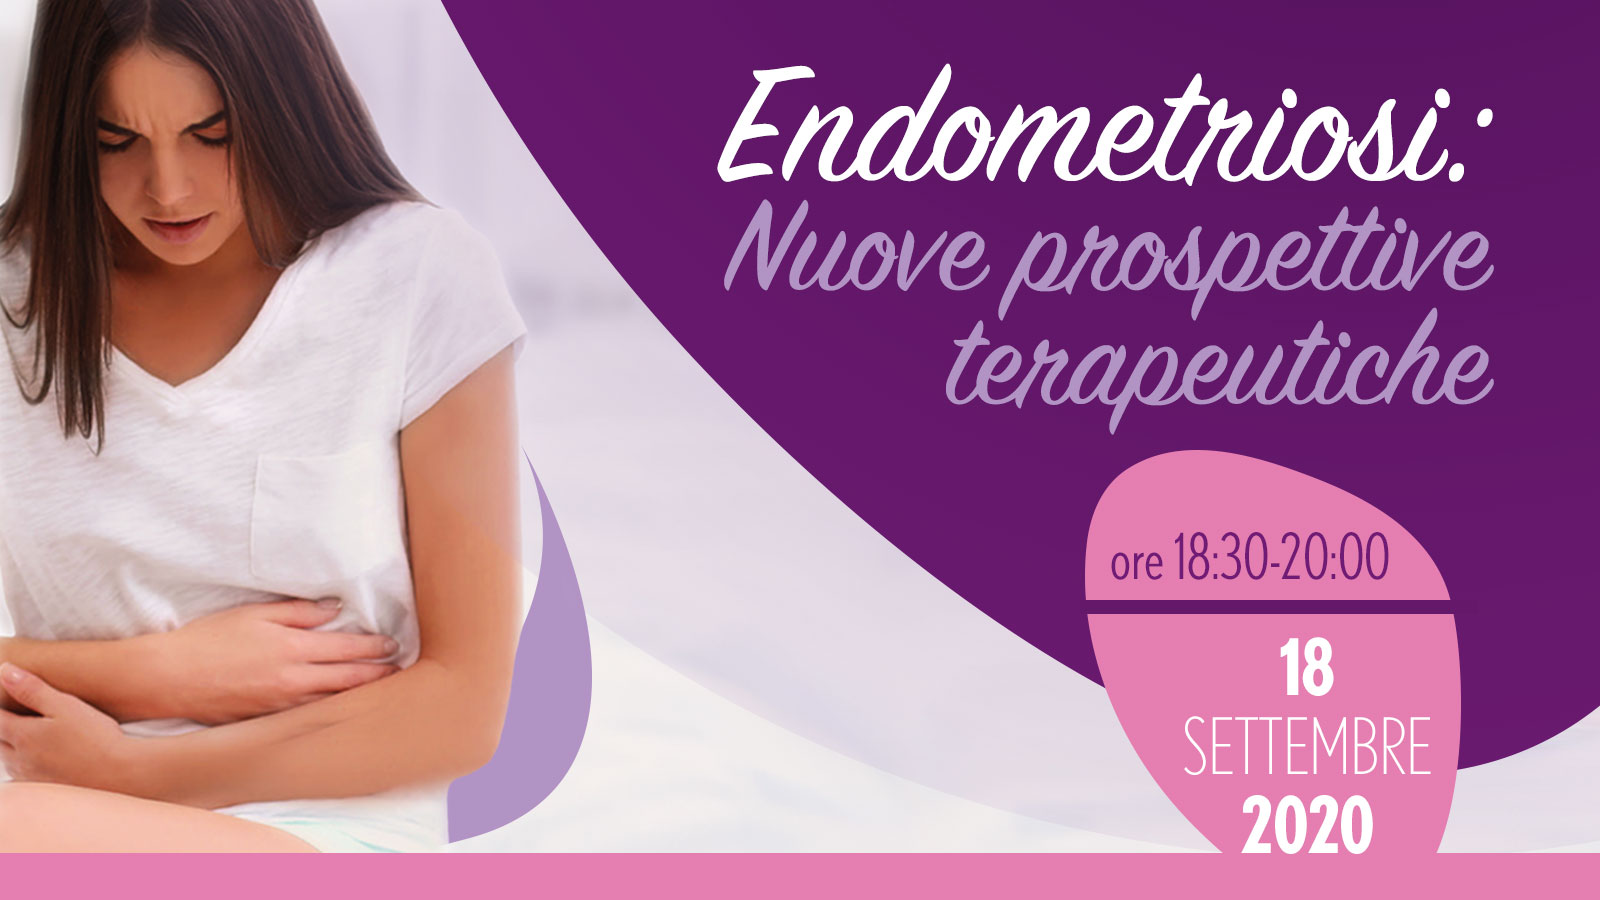 Endometriosi: Nuove prospettive terapeutiche